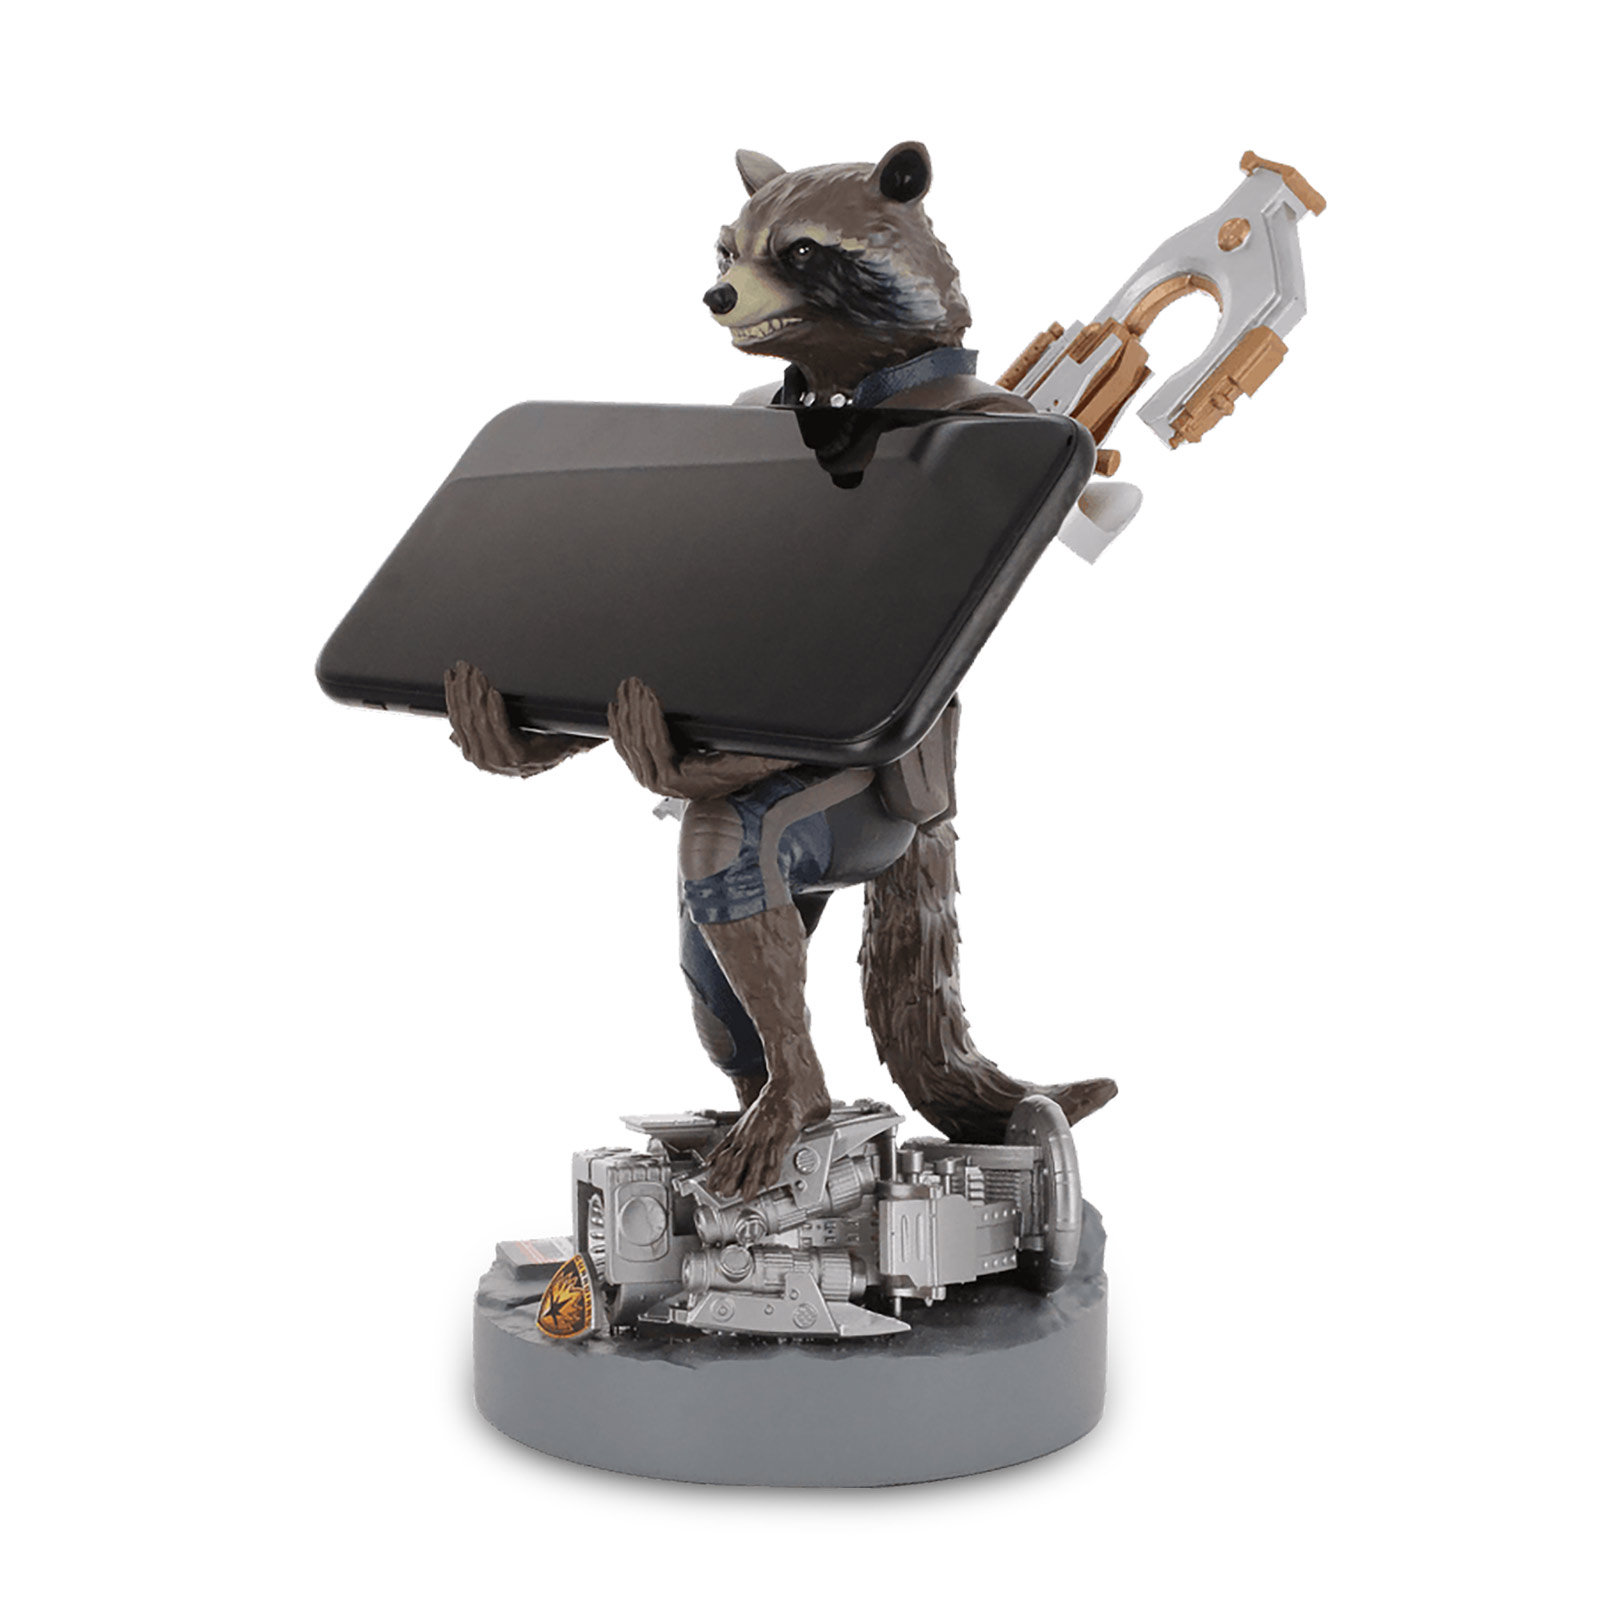 Les Gardiens de la Galaxie - Figurine Cable Guy Rocket Raccoon